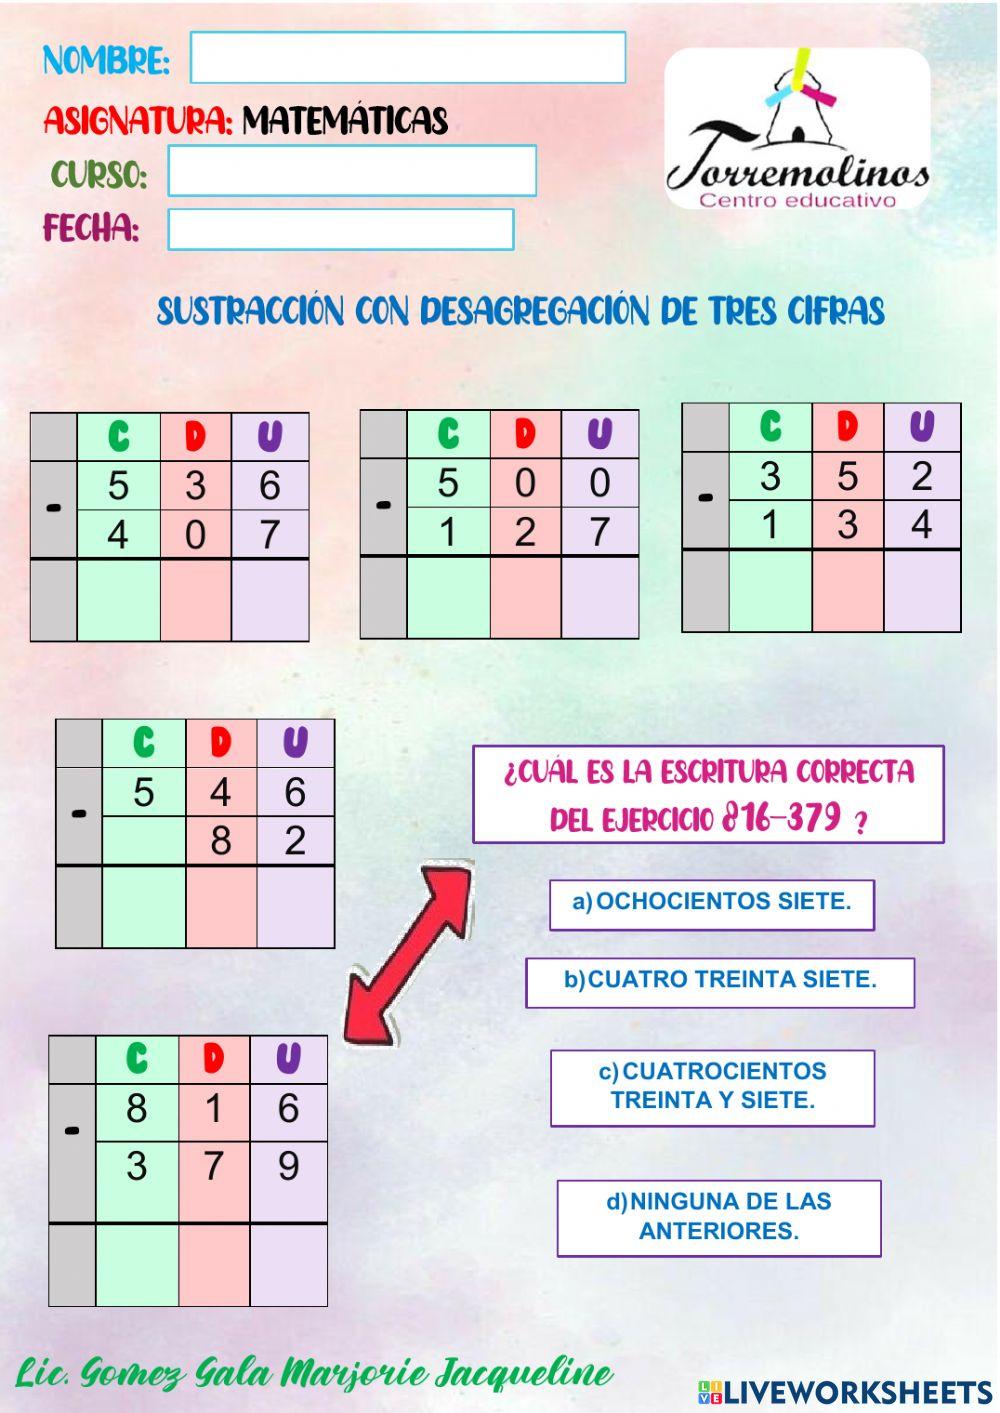 Unidad educativa torremolinos - Sustracción con desagregación de tres cifras.